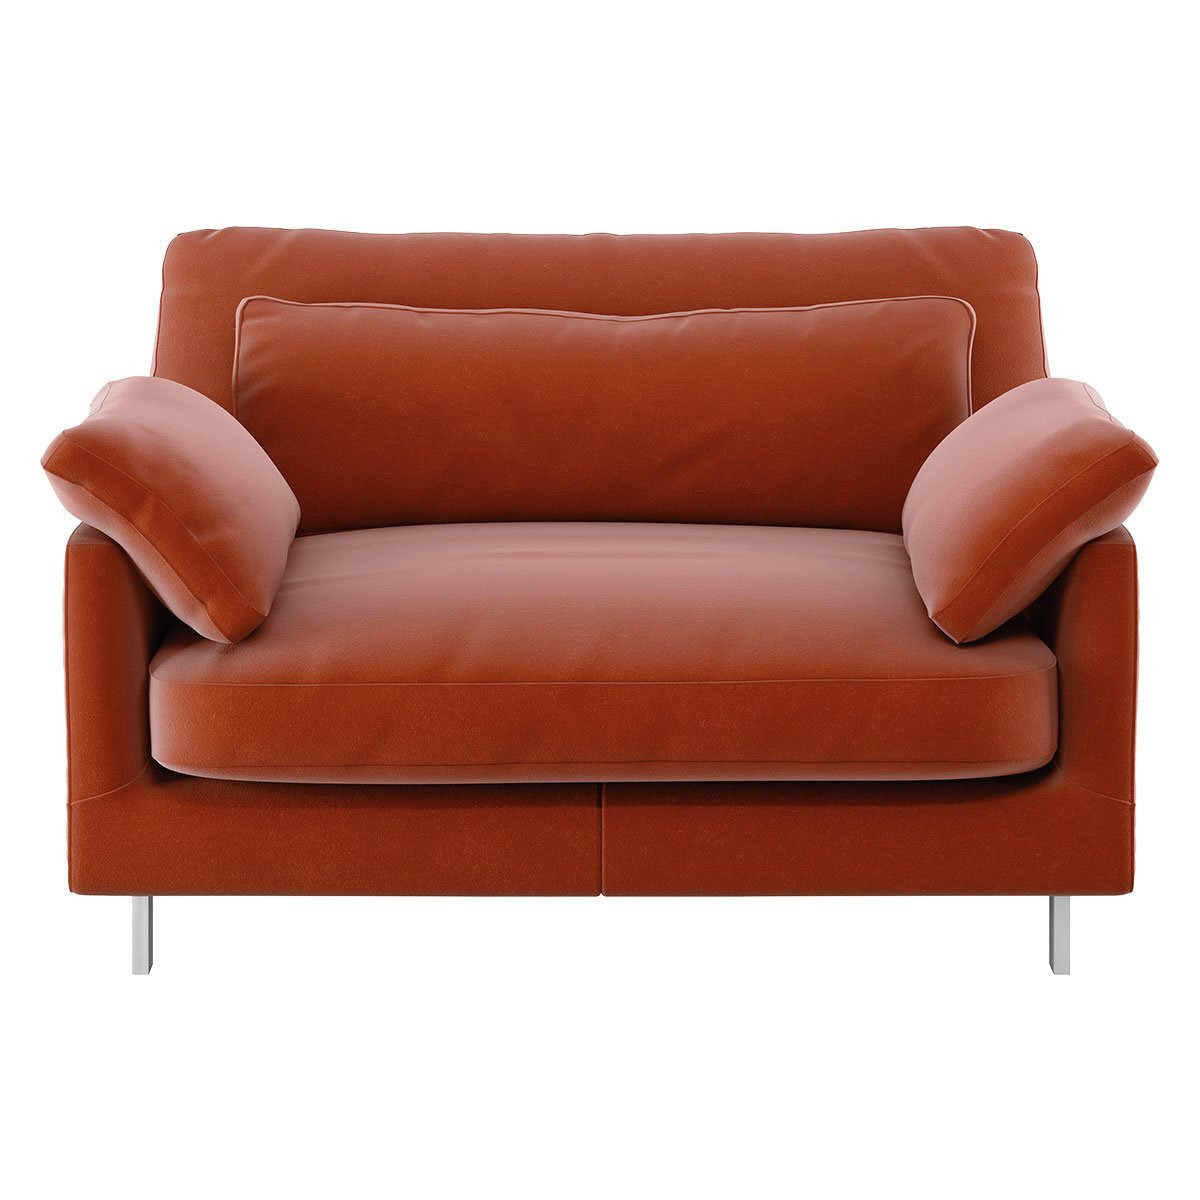 Habitat Cuscino Velvet Cuddle Chair - Orange - image 1